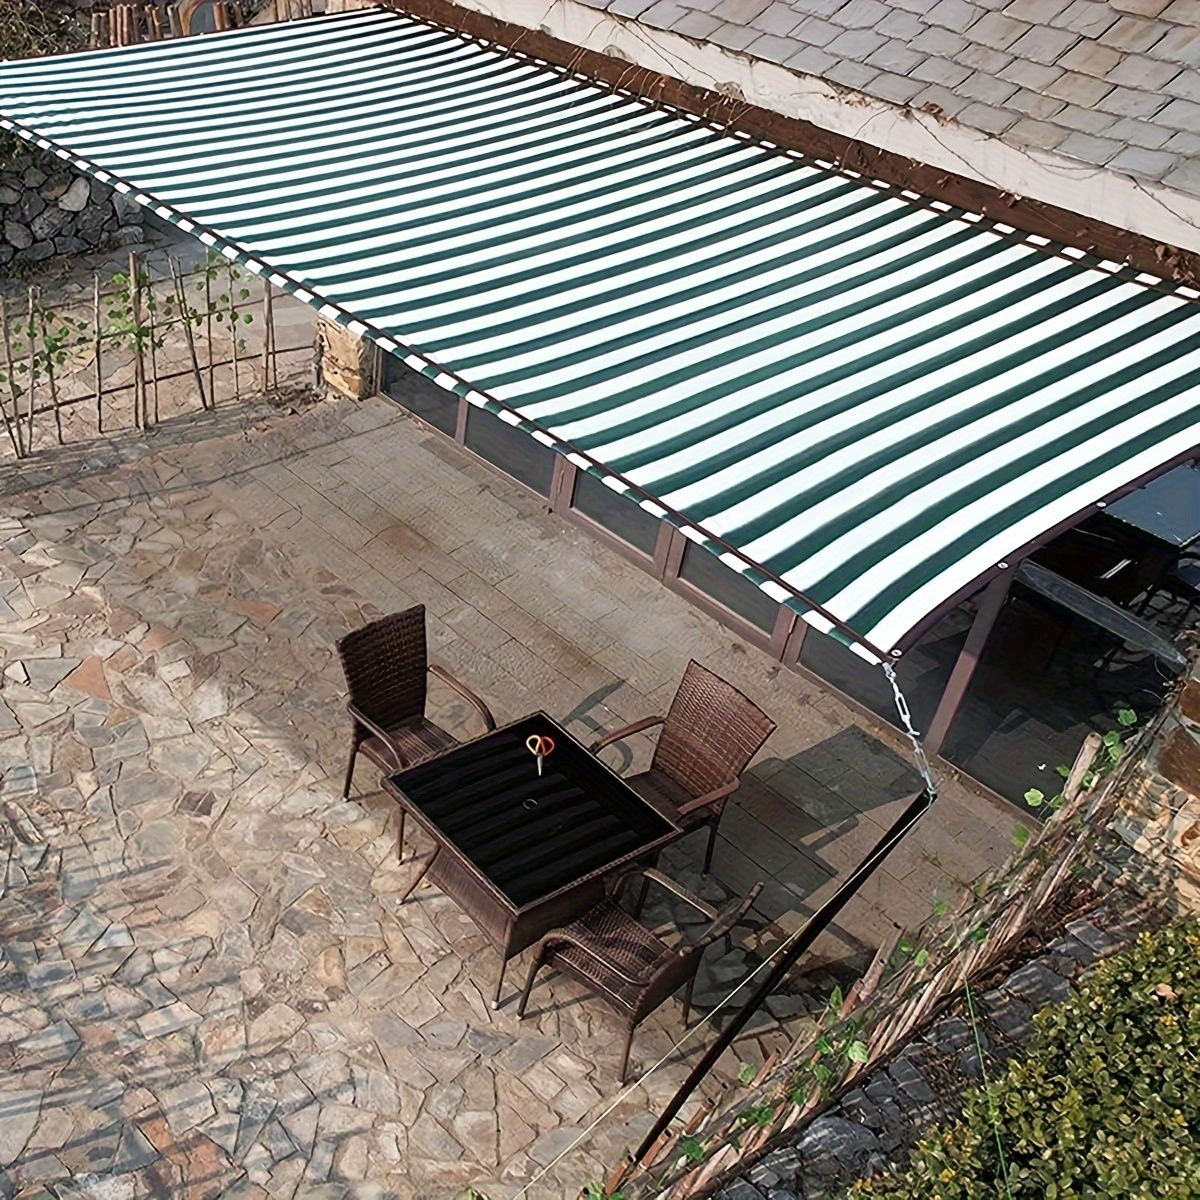  RAINCL Toldo exterior para sombra, impermeable de poliéster de  9.88 oz/m², cubierta para pérgola, bloquea el 98% de los rayos UV con  cuerda gratis para exteriores, jardín, patio, fiesta, toldo (color